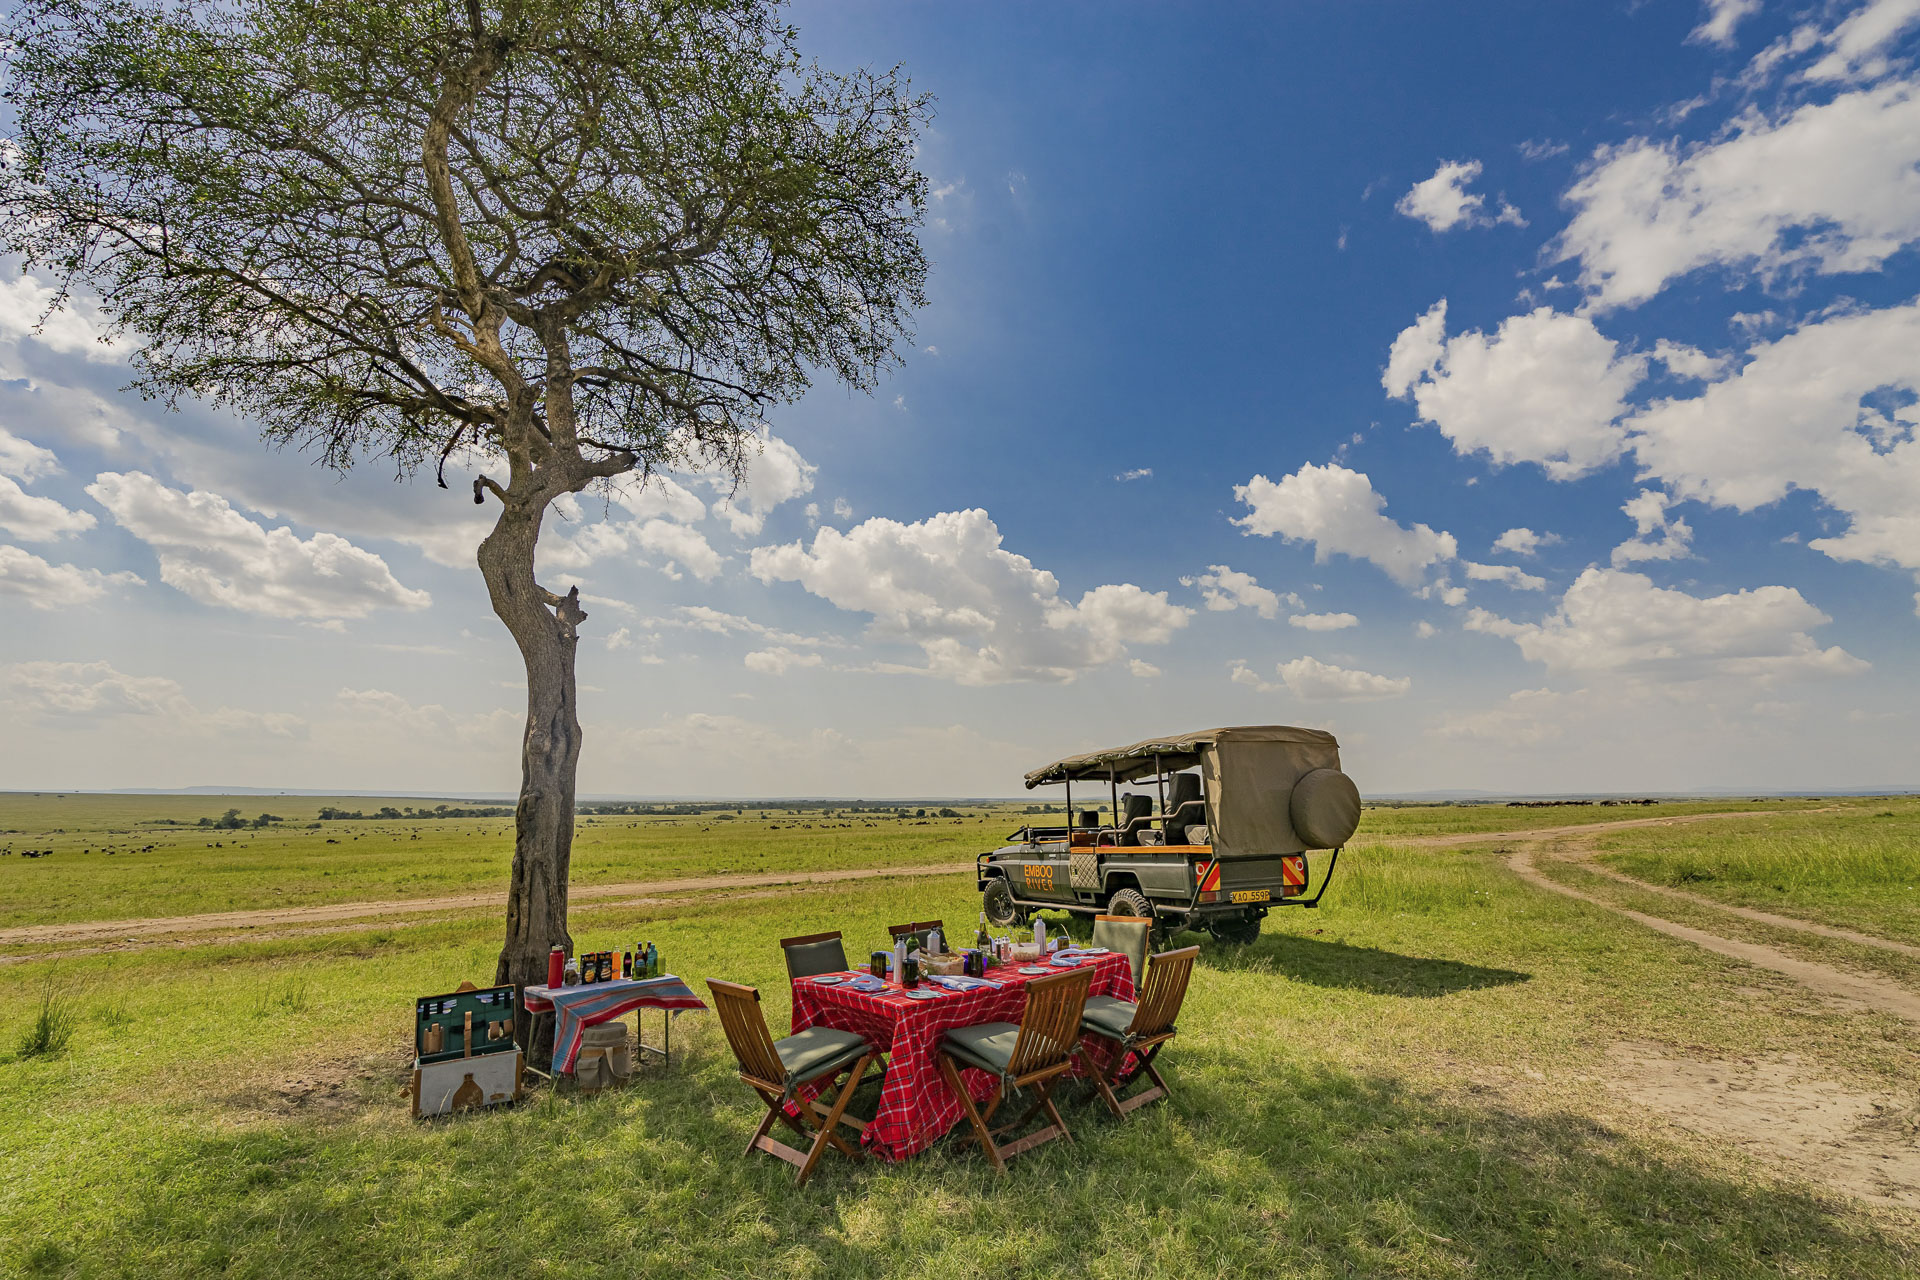 Emboo Camp in Kenia tijdens safari met Live To Travel